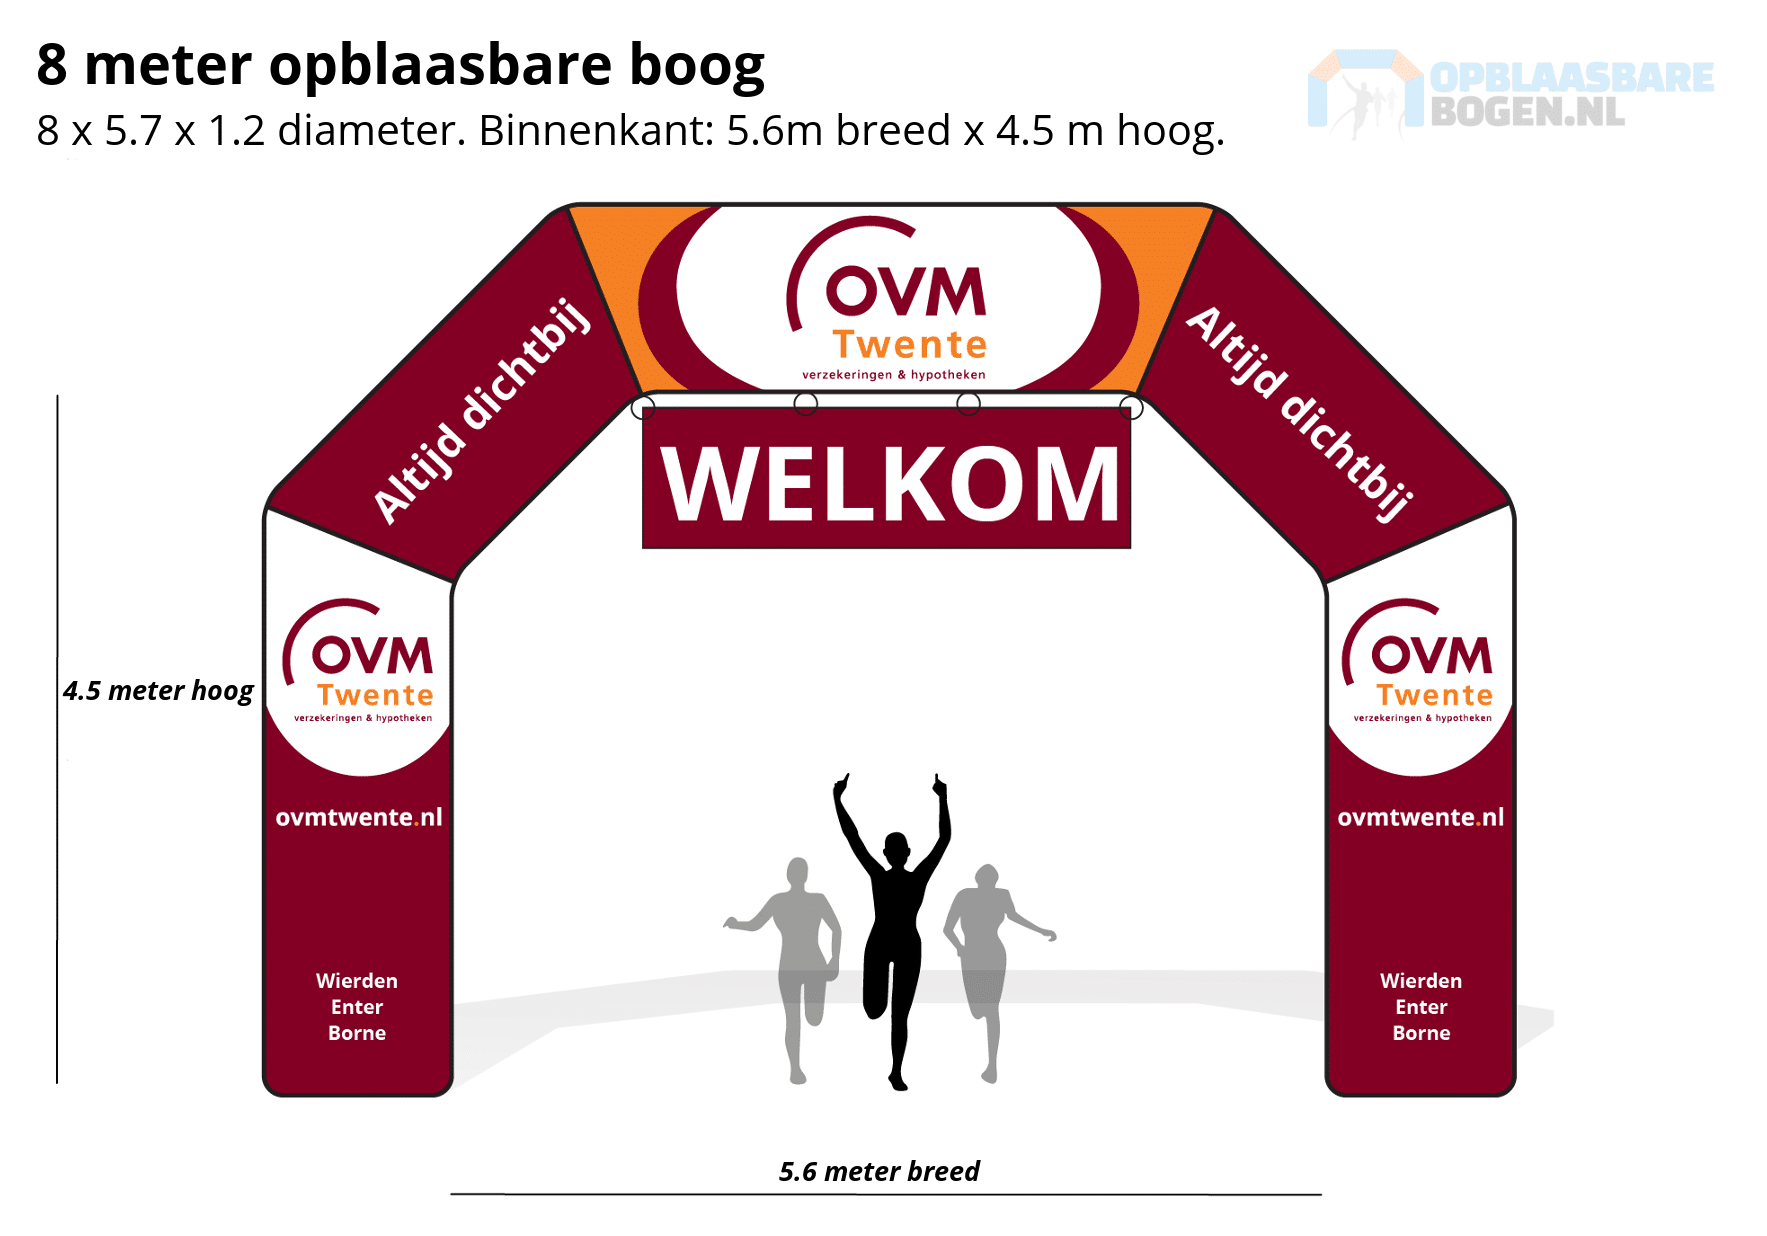 Ontwerp 8 meter Opblaasbare boog voor OVM Twente -Opblaasbarebogen.nl-